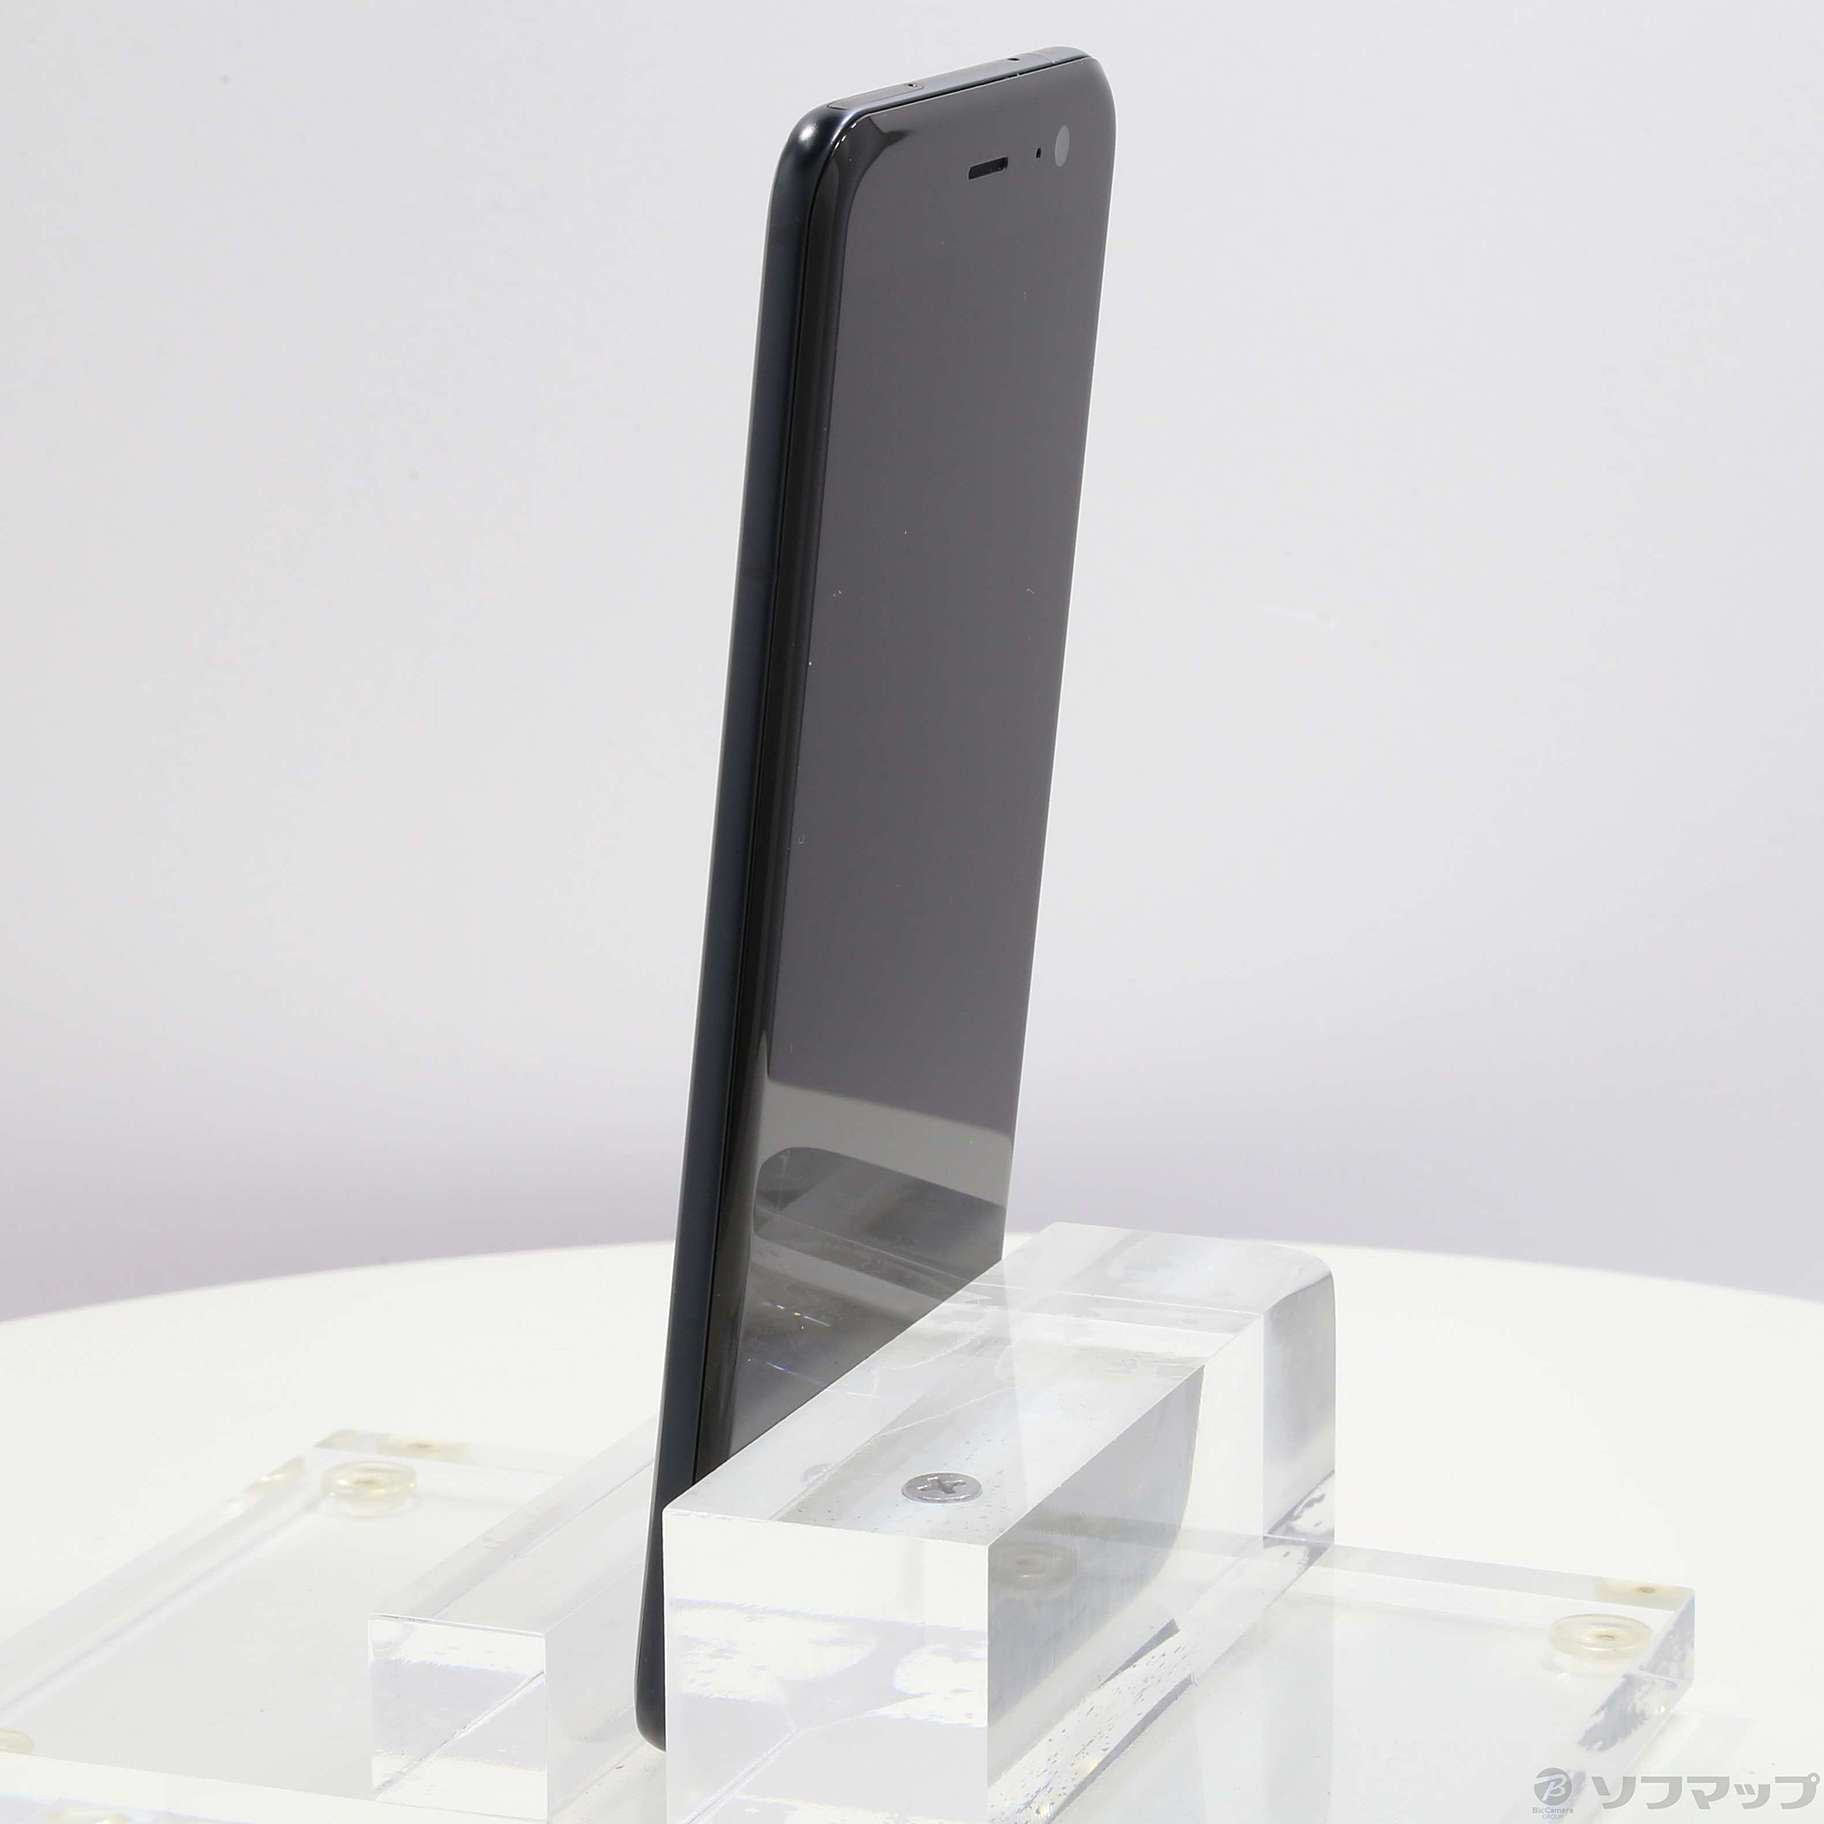 【HOT好評】SoftBank HTC u11 ブリリアントブラック SIMフリー スマートフォン本体